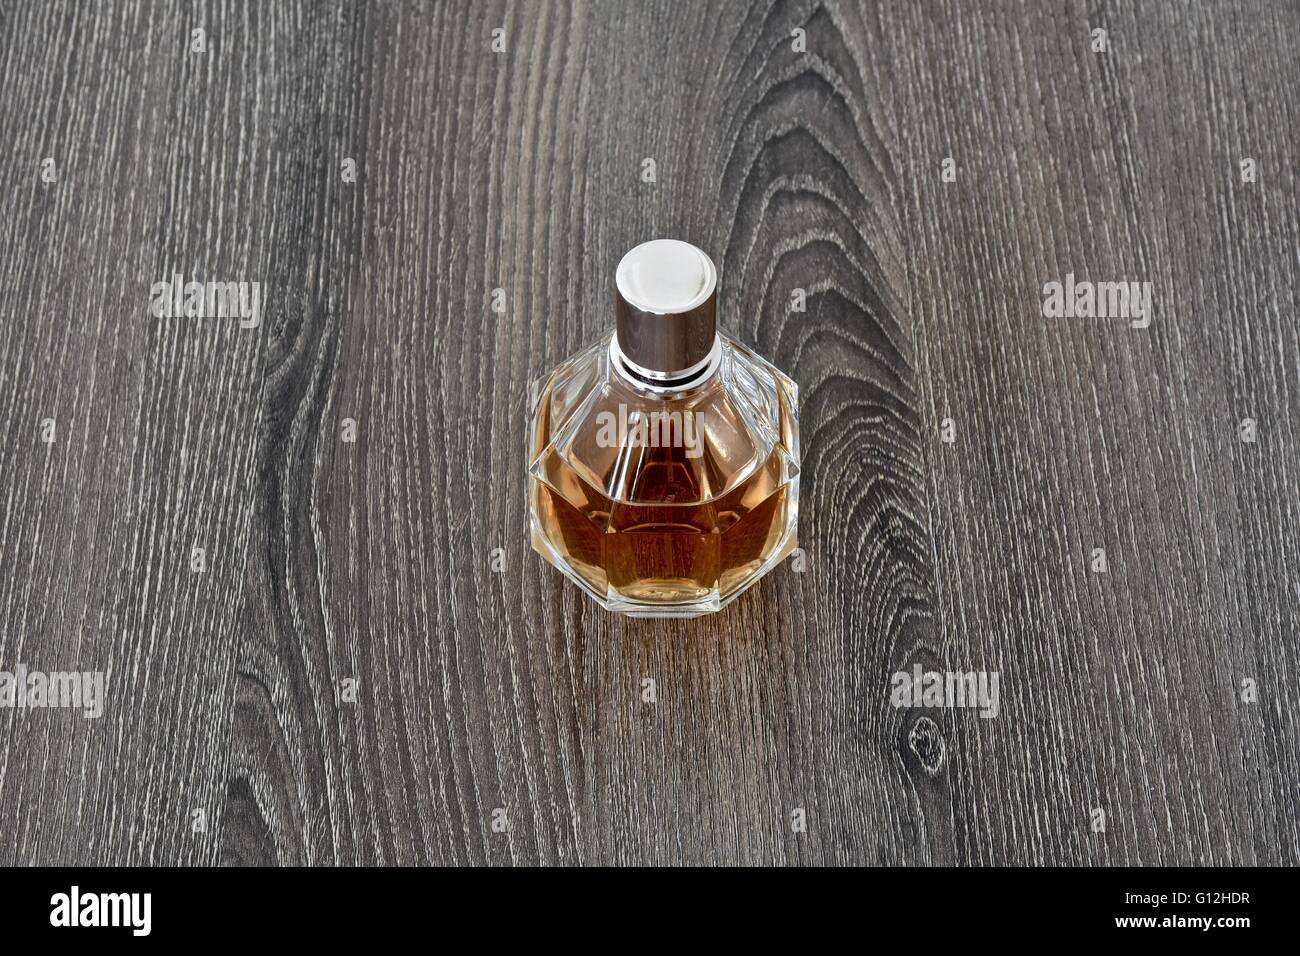 Una Botella de Perfume de mujer sobre una superficie de madera Foto de stock